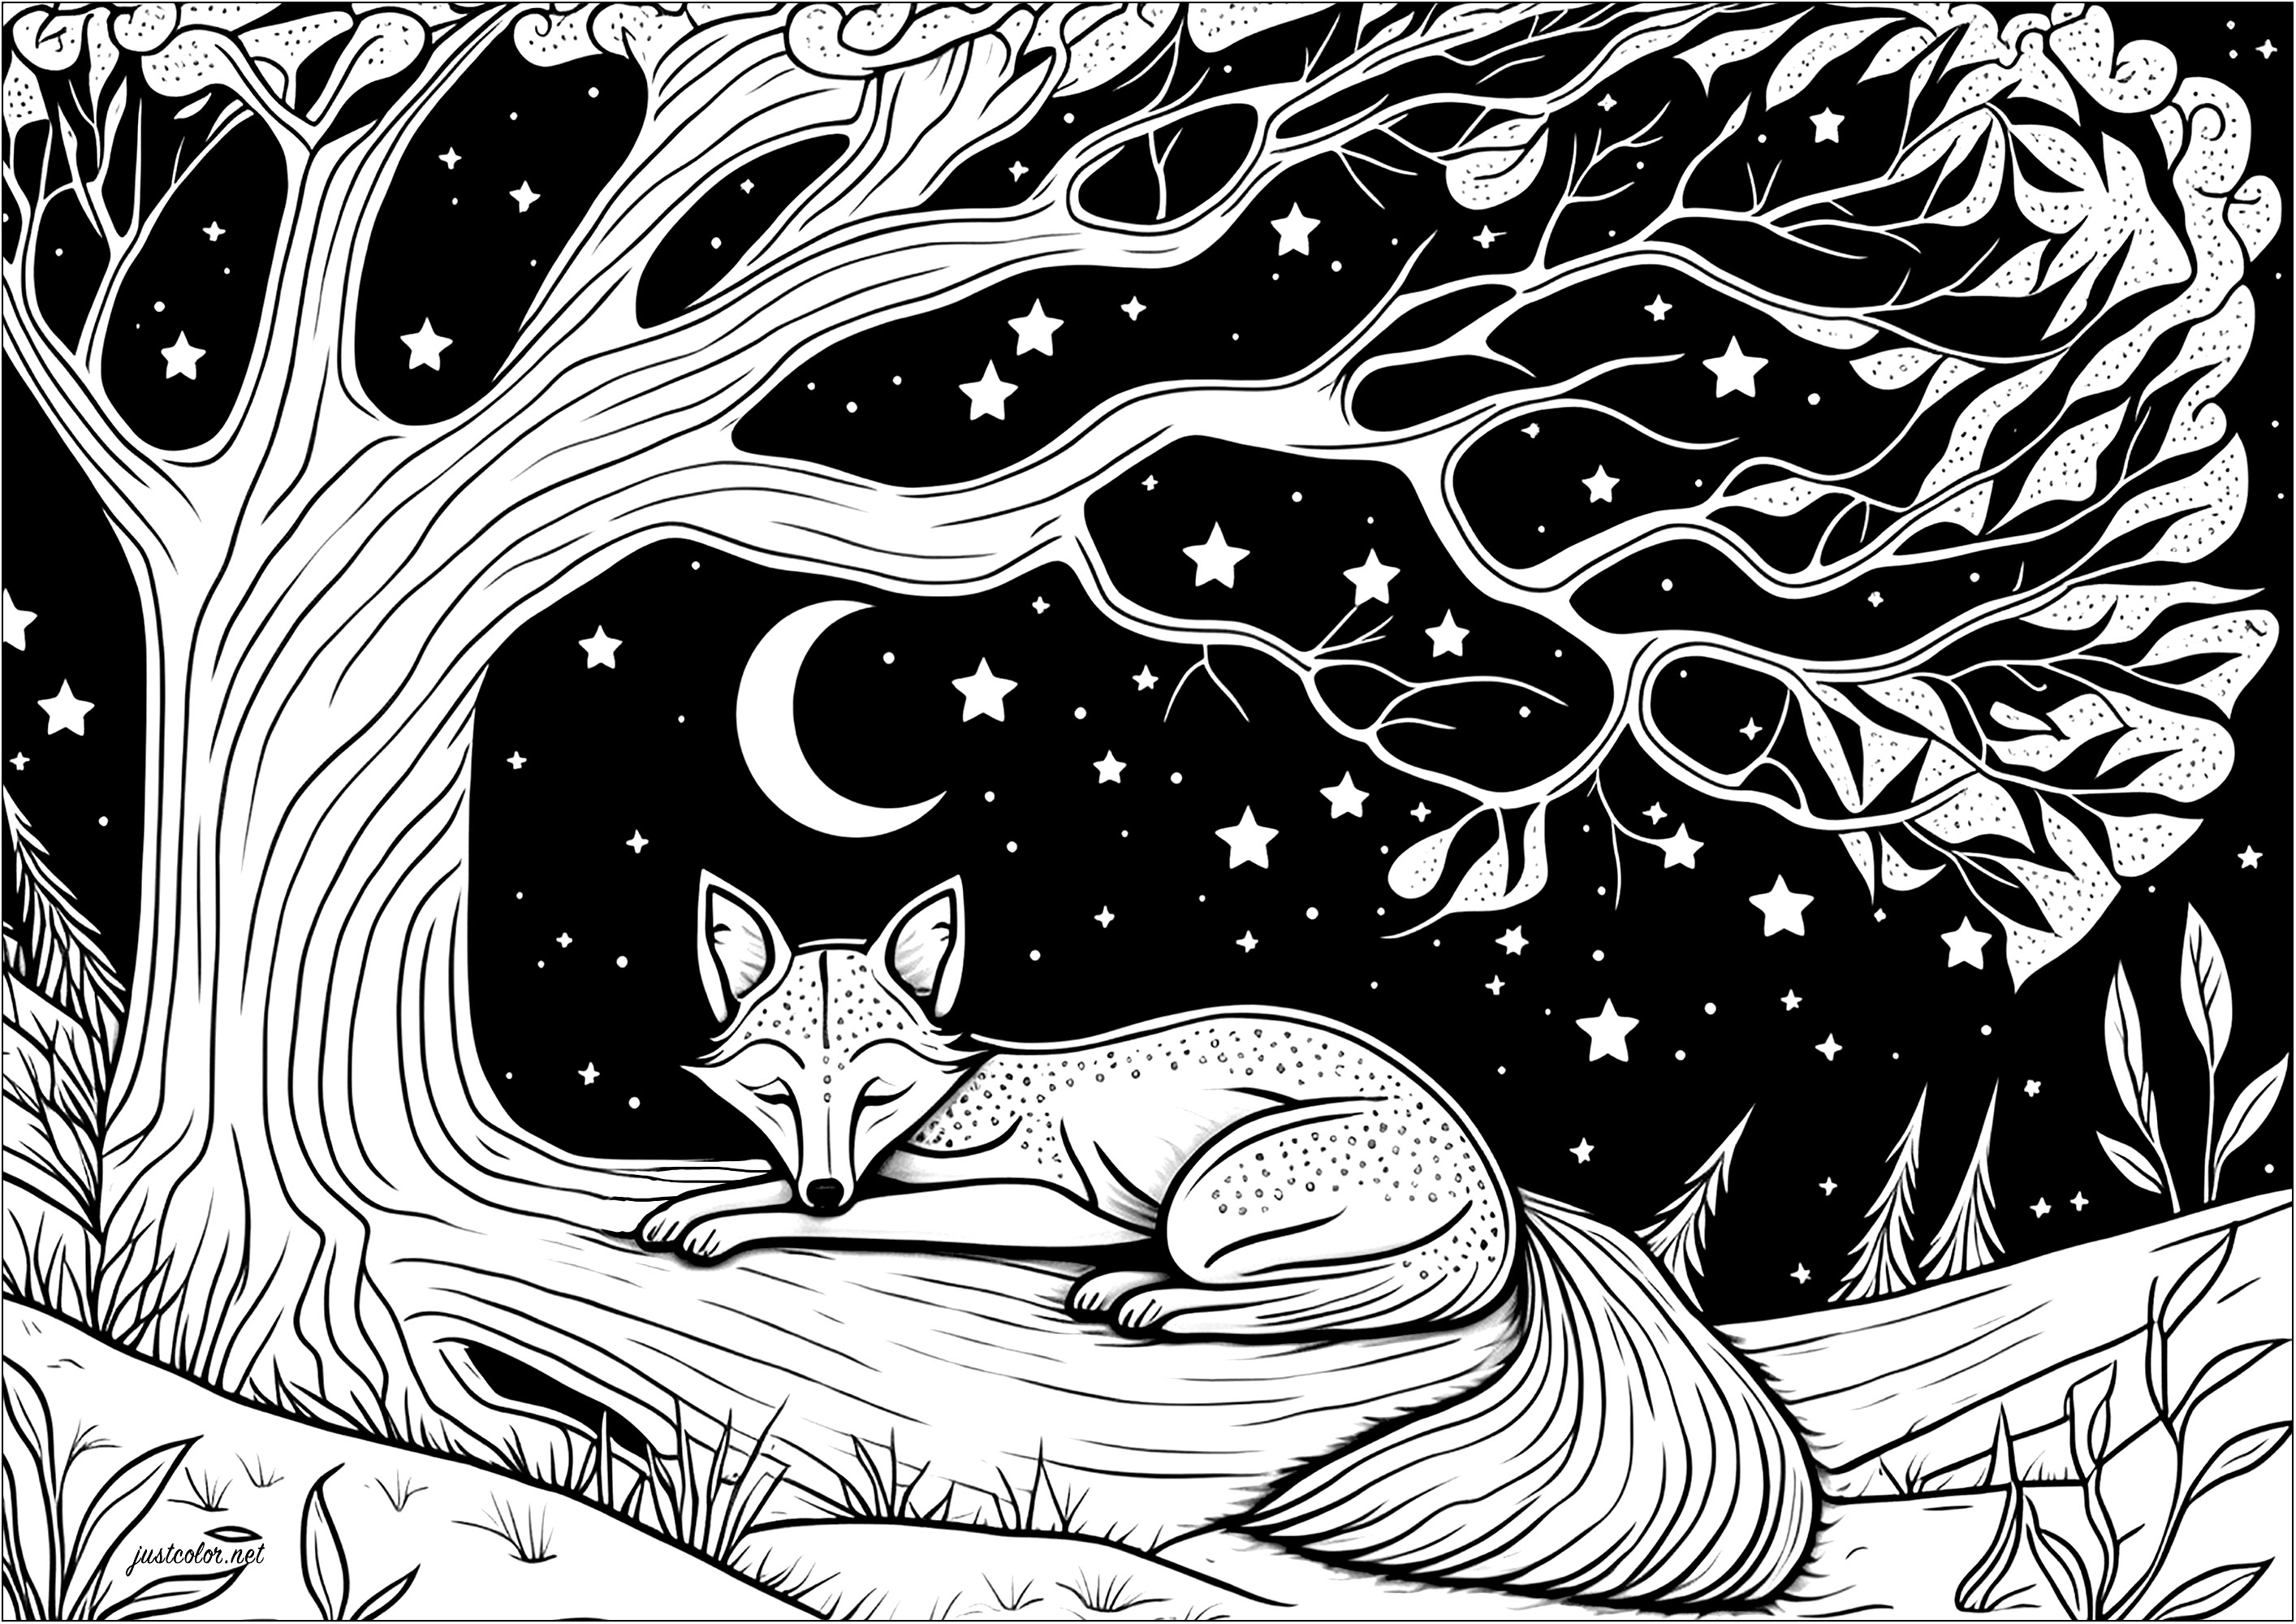 Colorazione di una volpe addormentata e sdraiata su un ramo d'albero. Ecco una volpe che dorme tranquillamente sotto un bellissimo albero. Sotto questo cielo stellato, sembra che stia sognando grandi avventure!